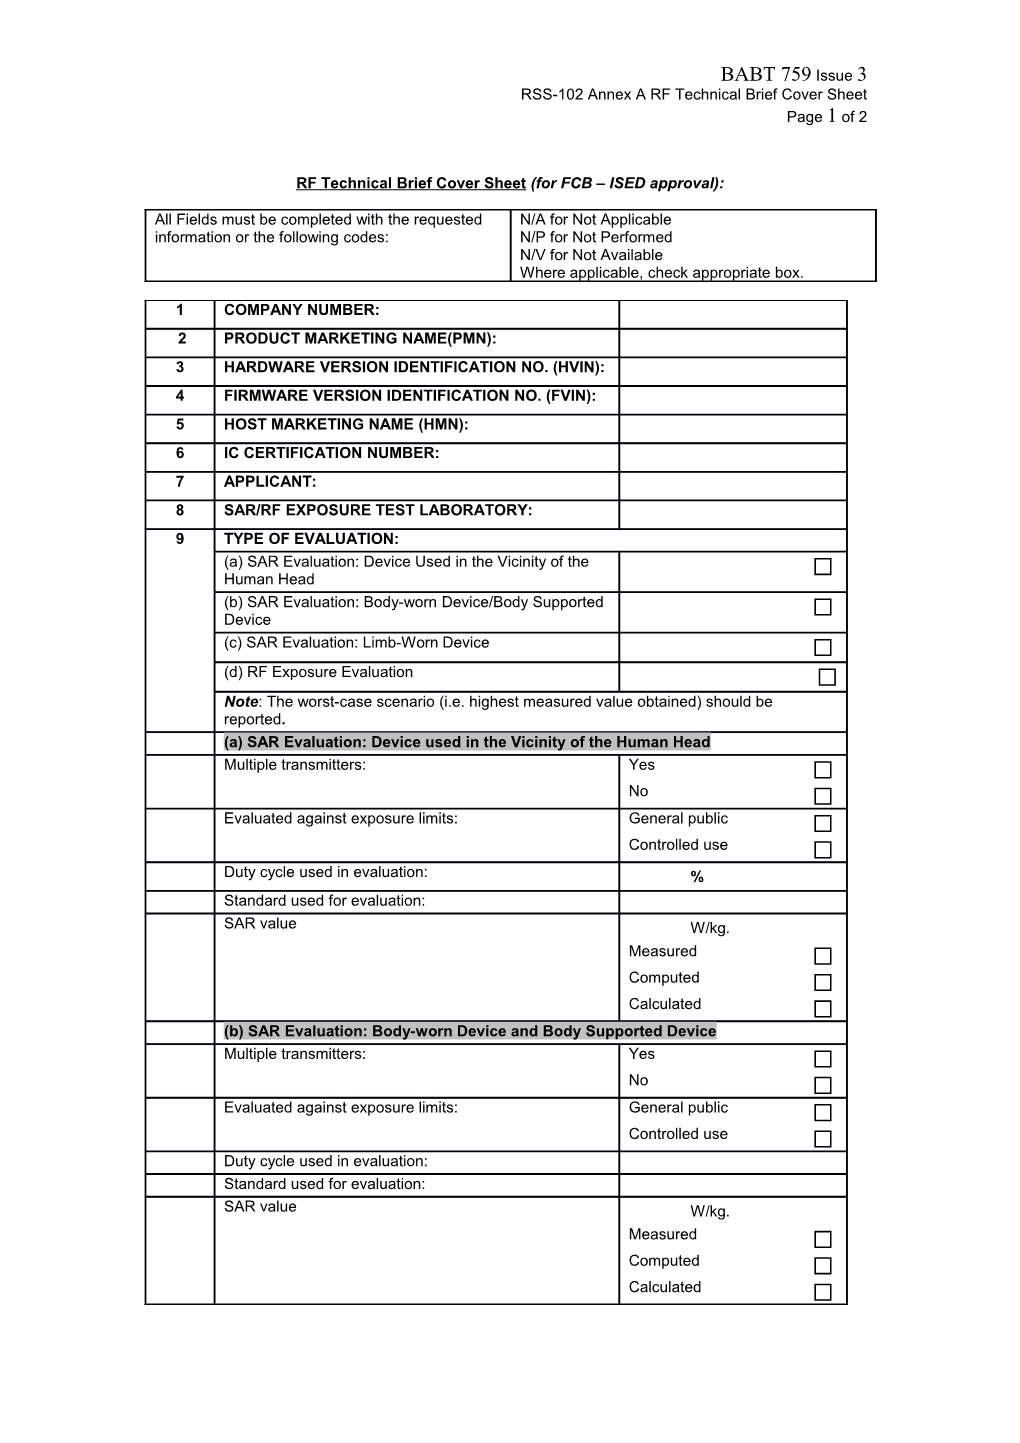 RSS-102 Annex a RF Technical Brief Cover Sheet